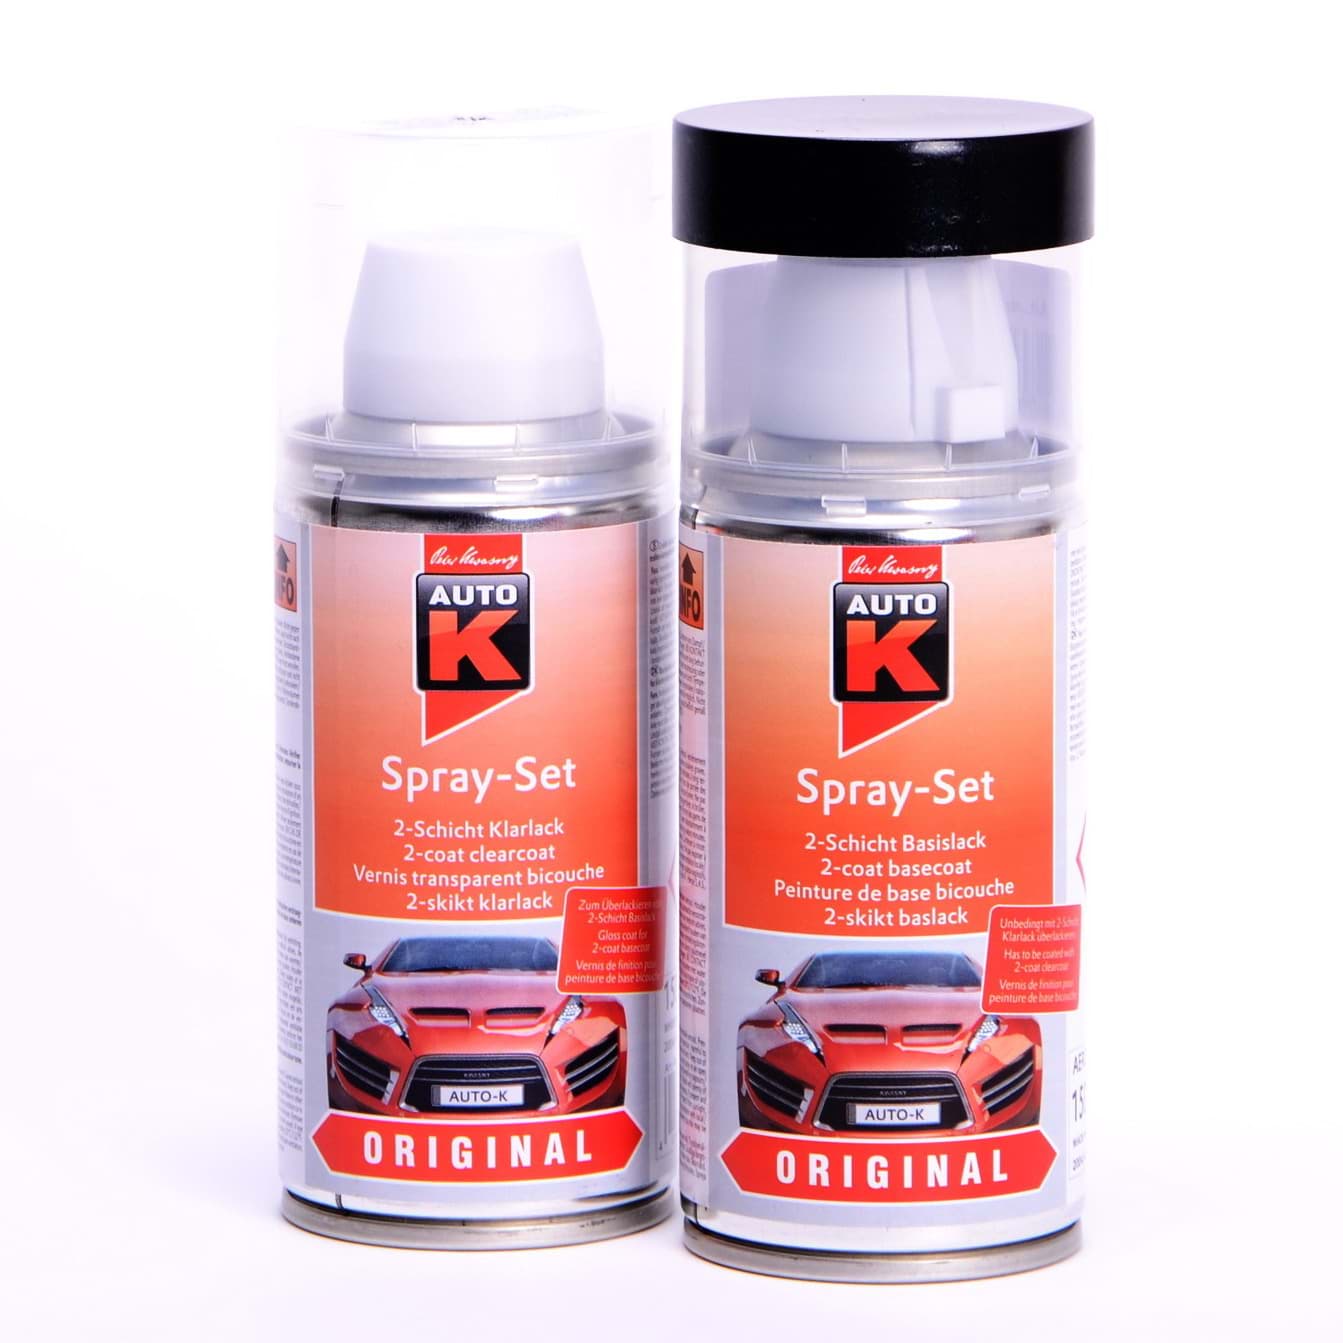 Afbeelding van Auto-K Spray-Set Autolack für Ford Kristallblau met 3DTC 22541